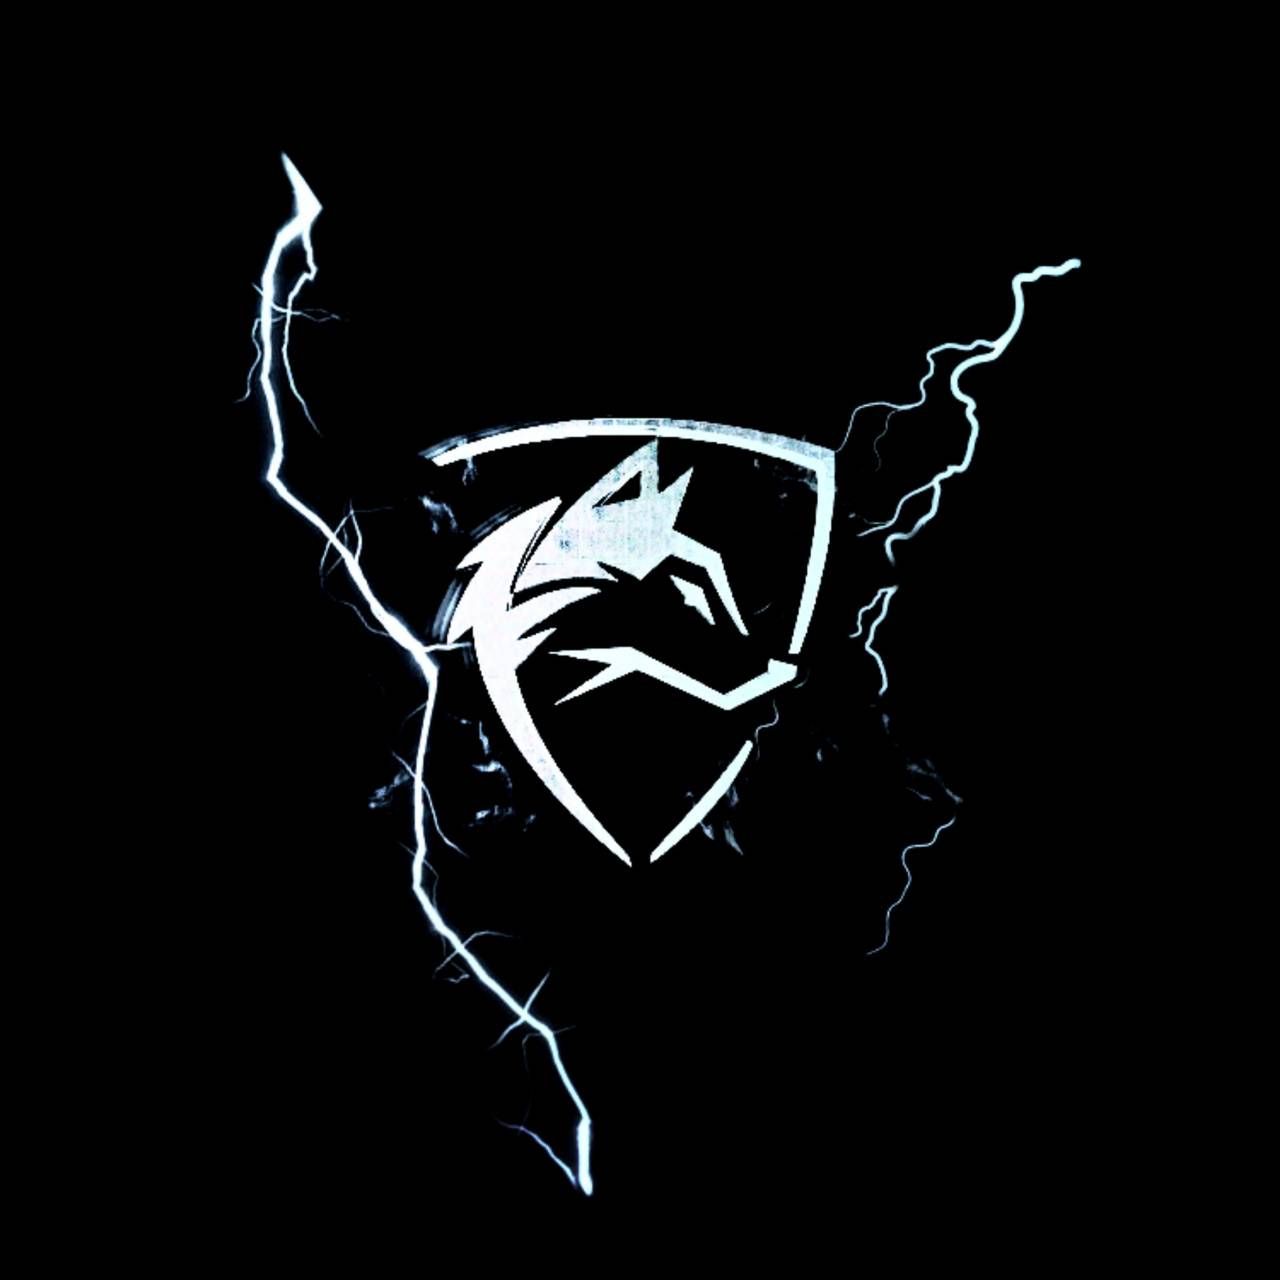 Wolf logo gaming wallpaper